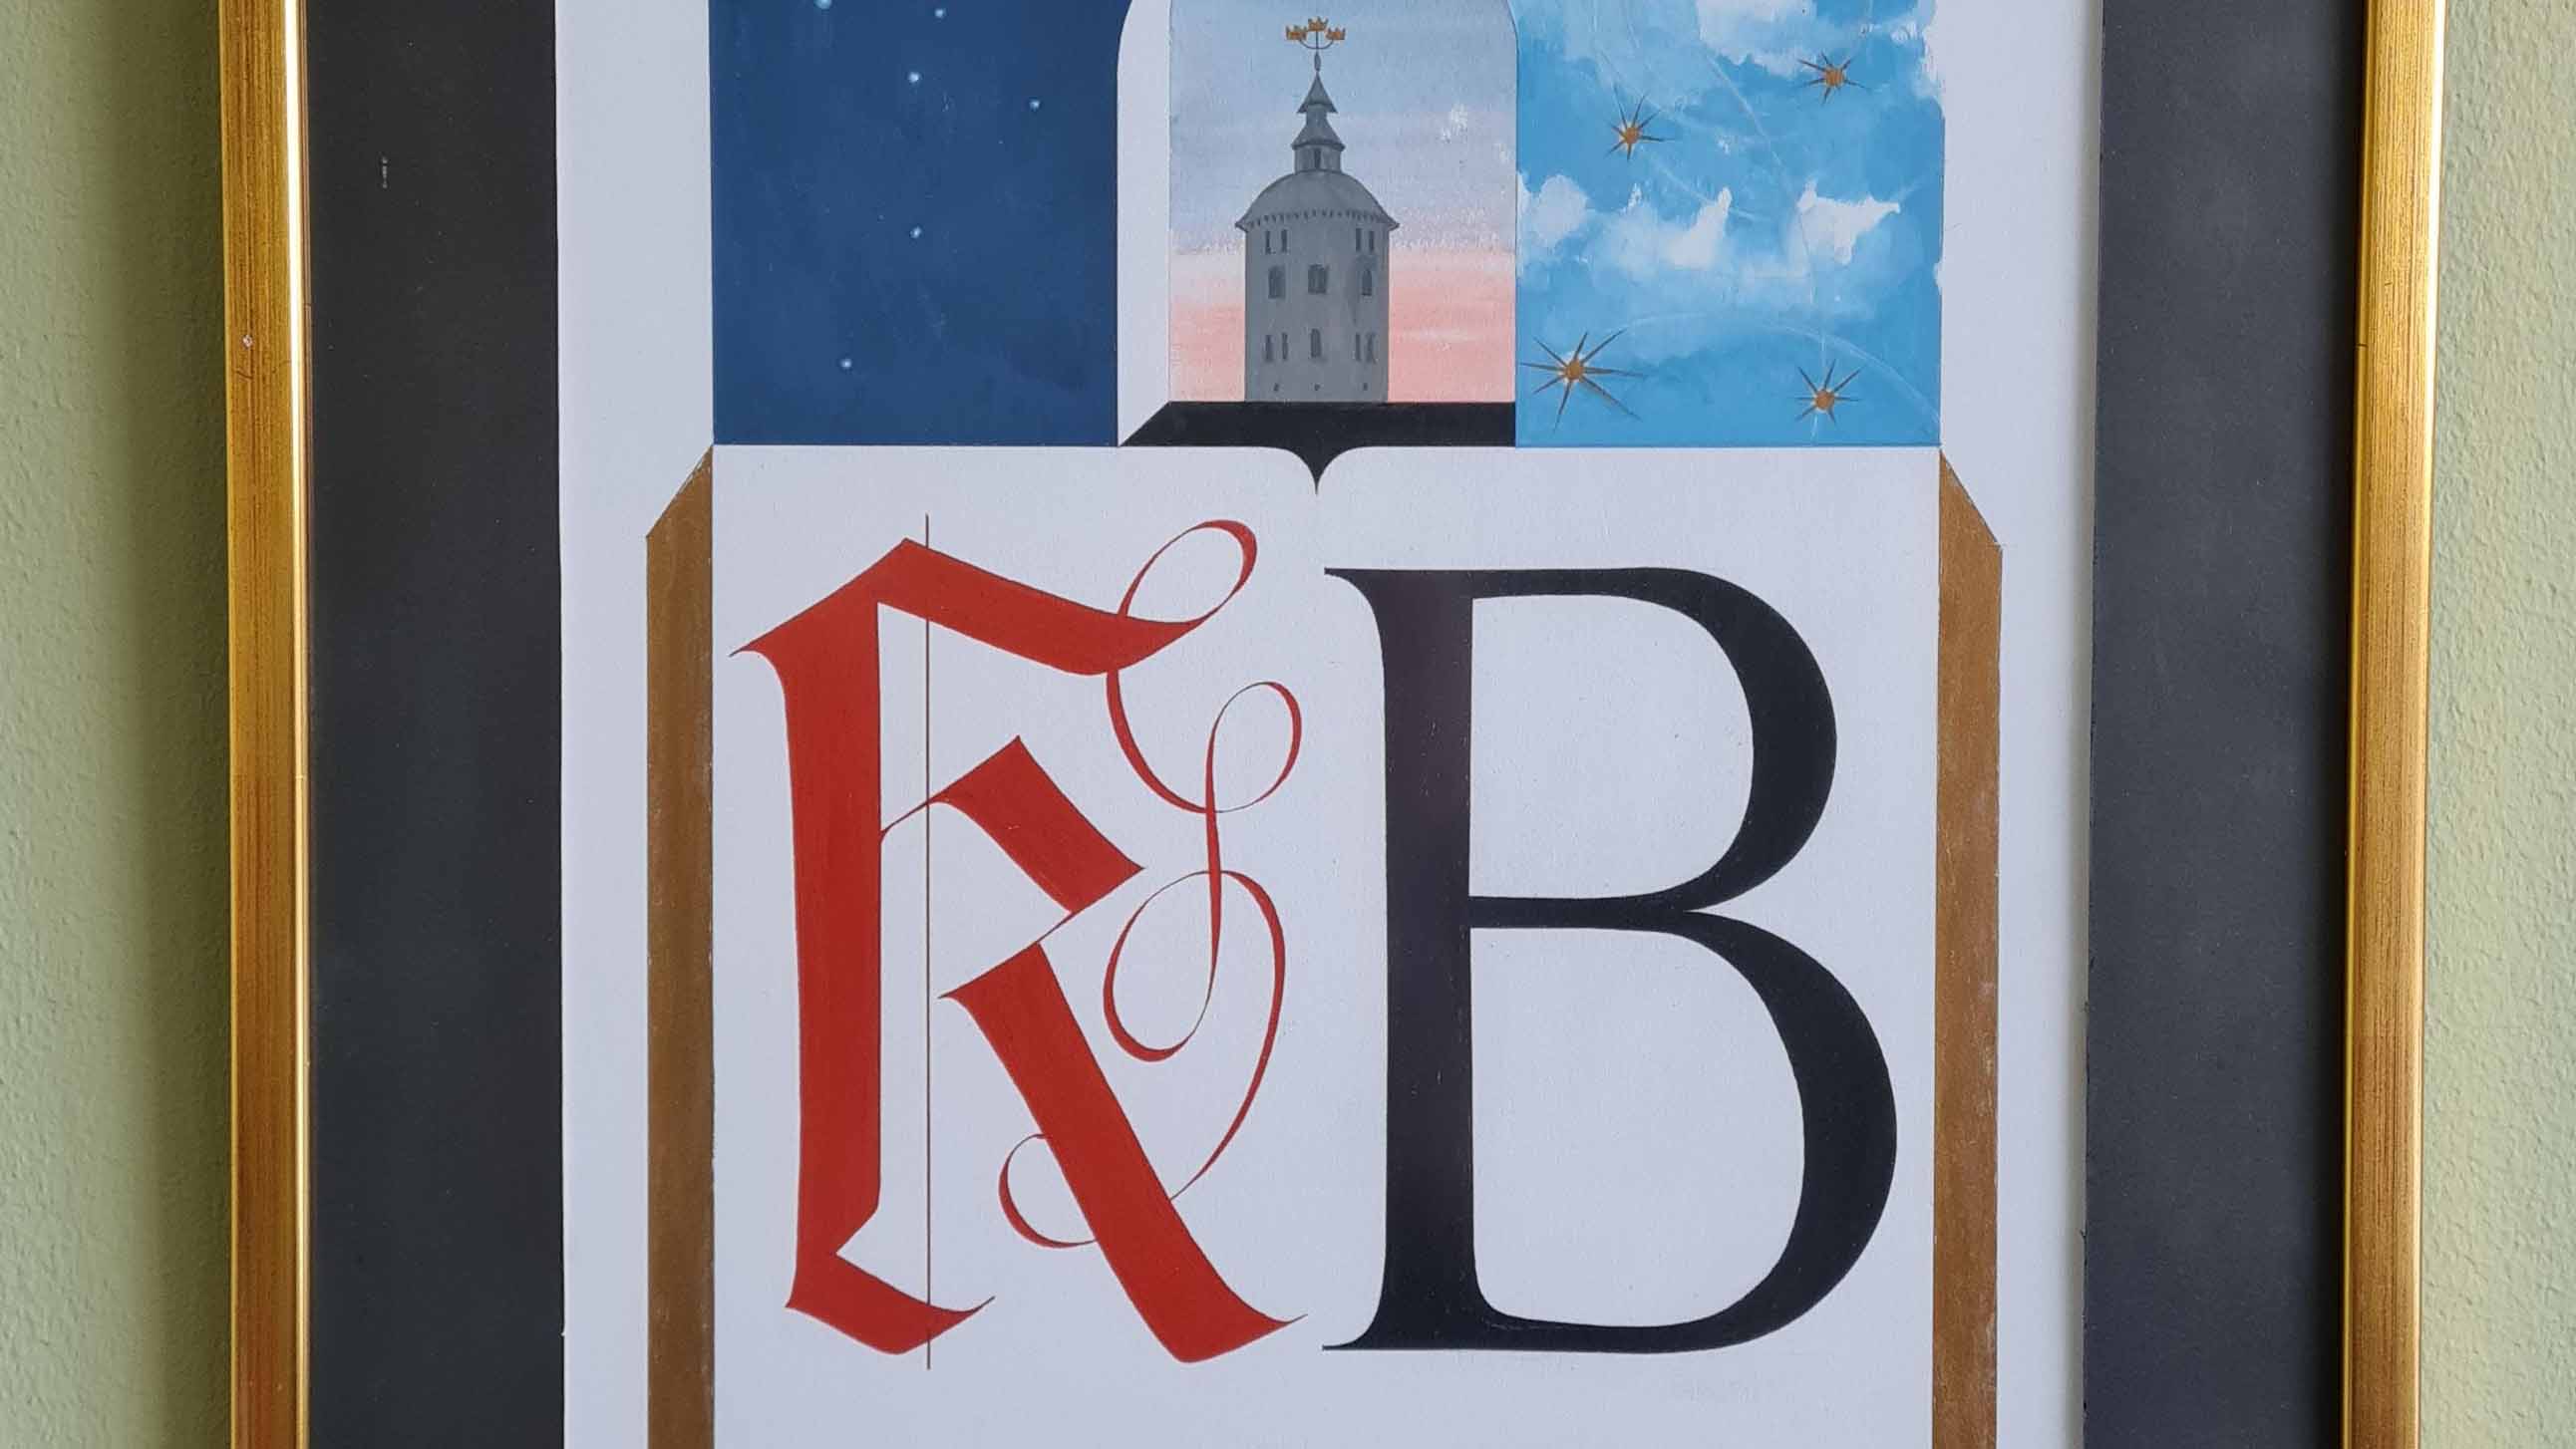 En tavla med texten "KB" och ett torn mot en blårosa himmel.